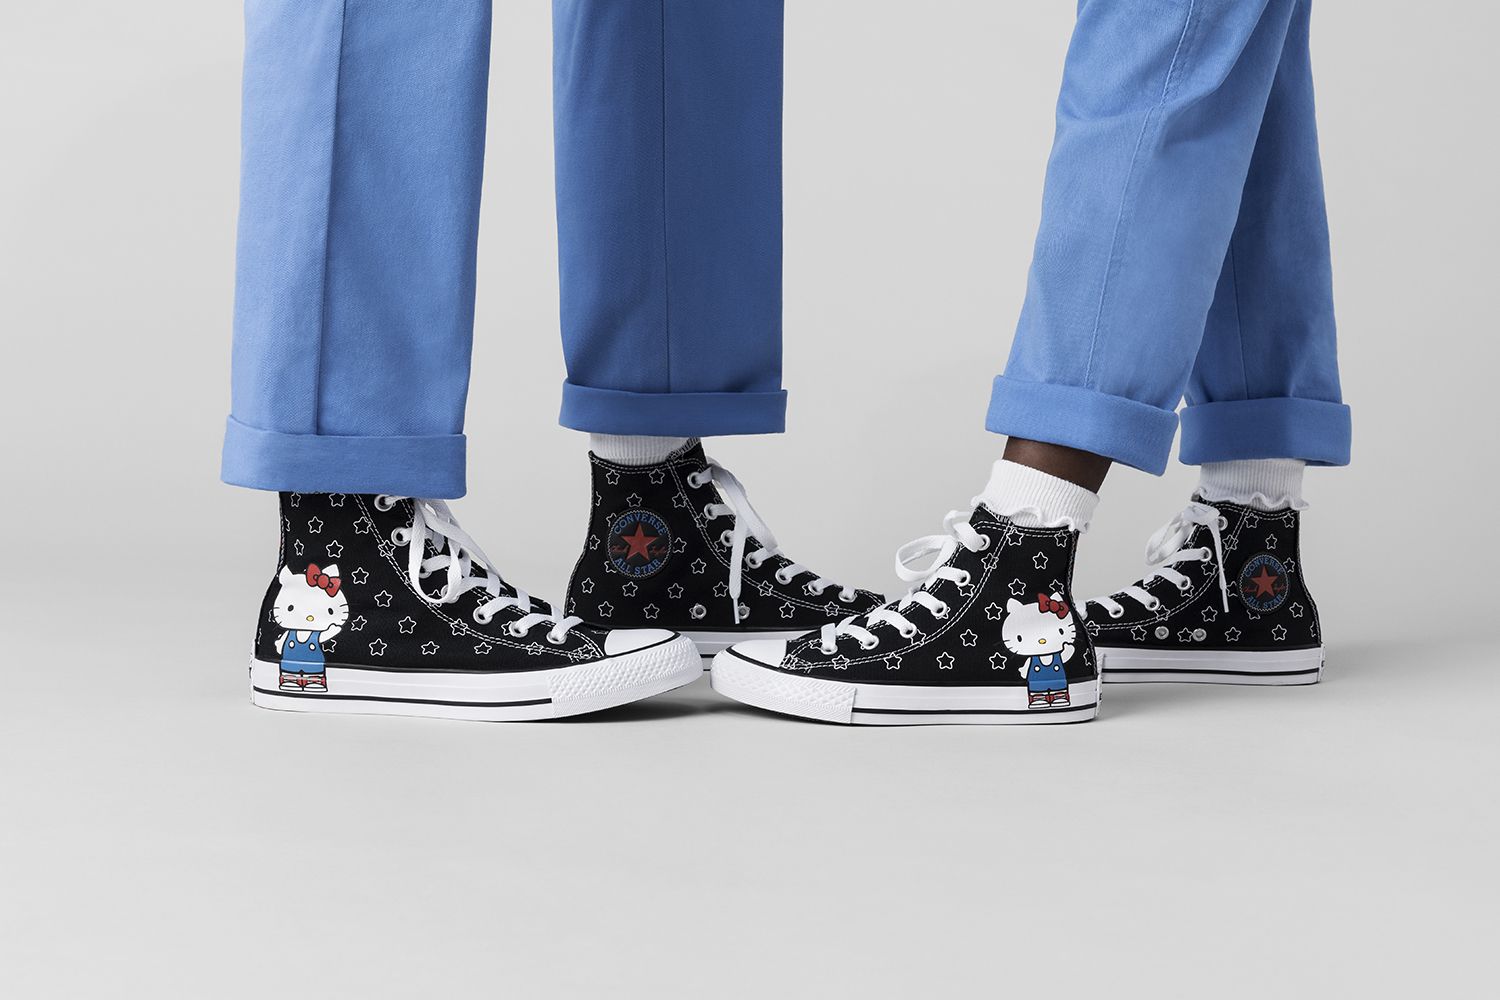 Nueva colección de x Hello Kitty - Converse x Hello Kitty: vuelve colección más divertida para niños y mayores